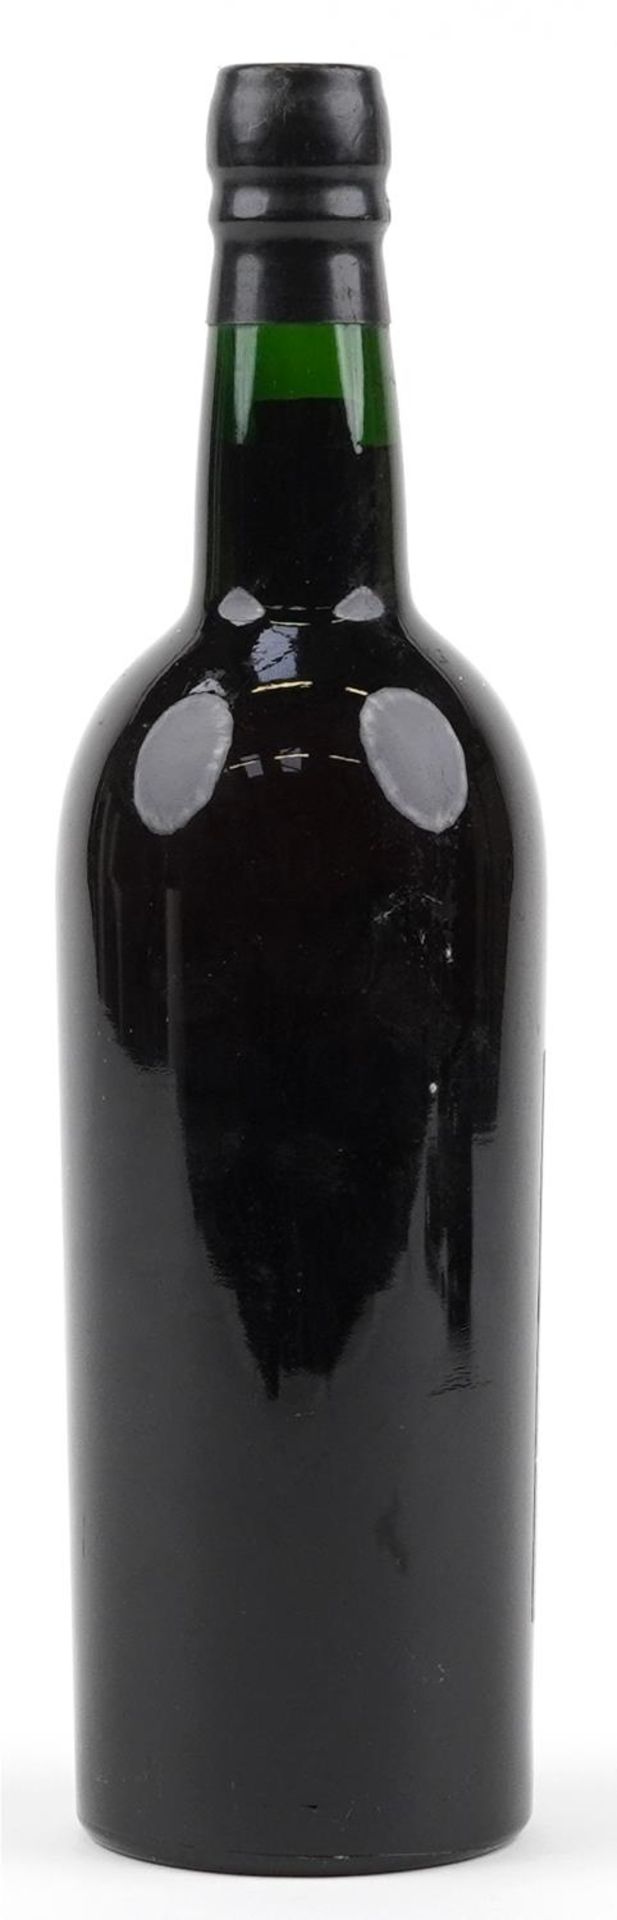 Bottle of Croft 1963 vintage port - Image 2 of 2